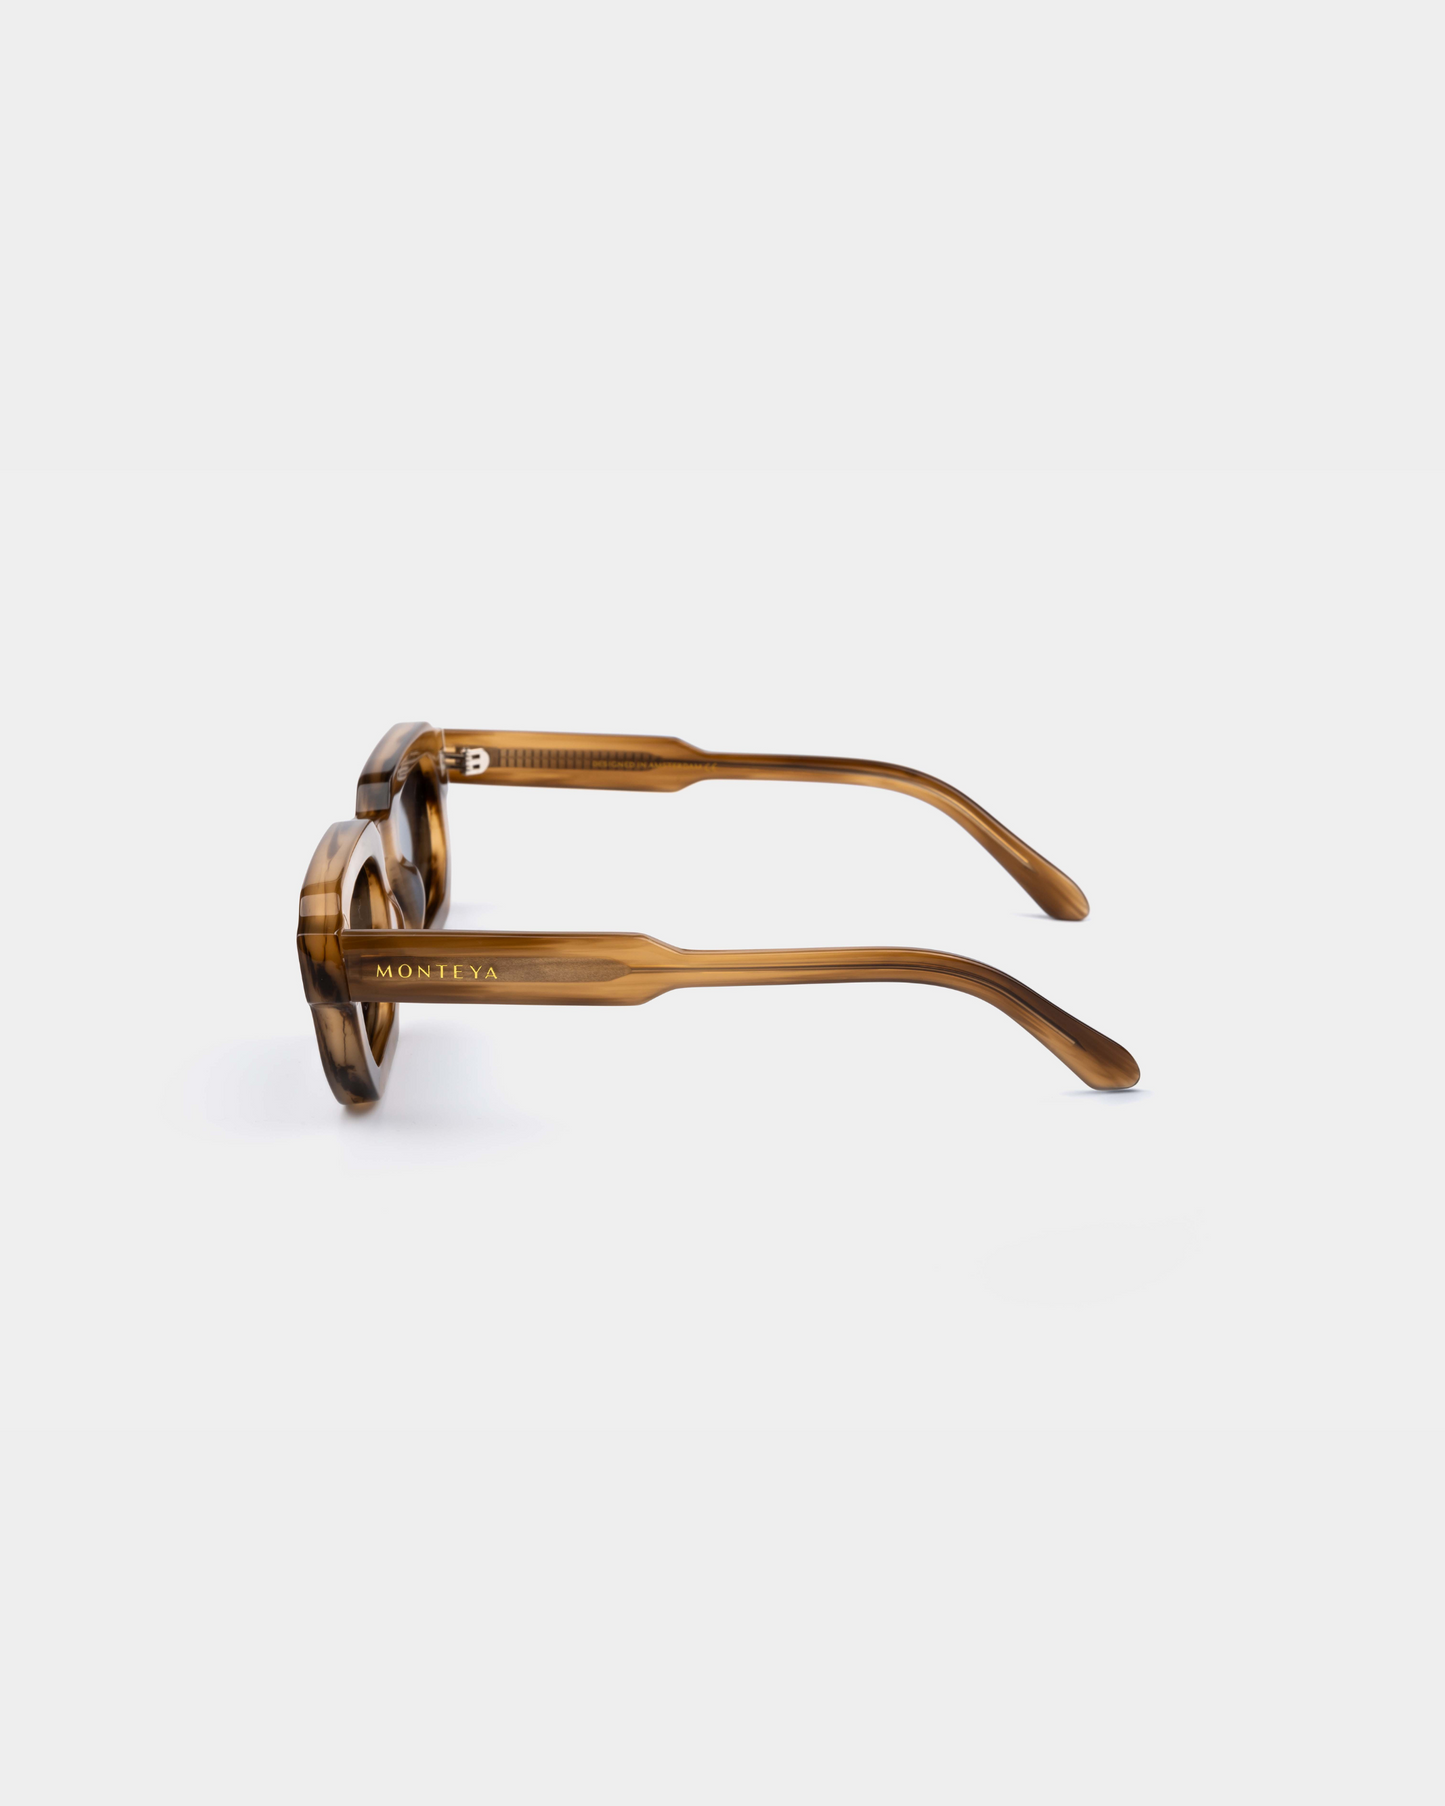 MONTEYA Urban - Sahara - Acetate Frame - TAC Polarized Lenses - High End Eyewear - 03